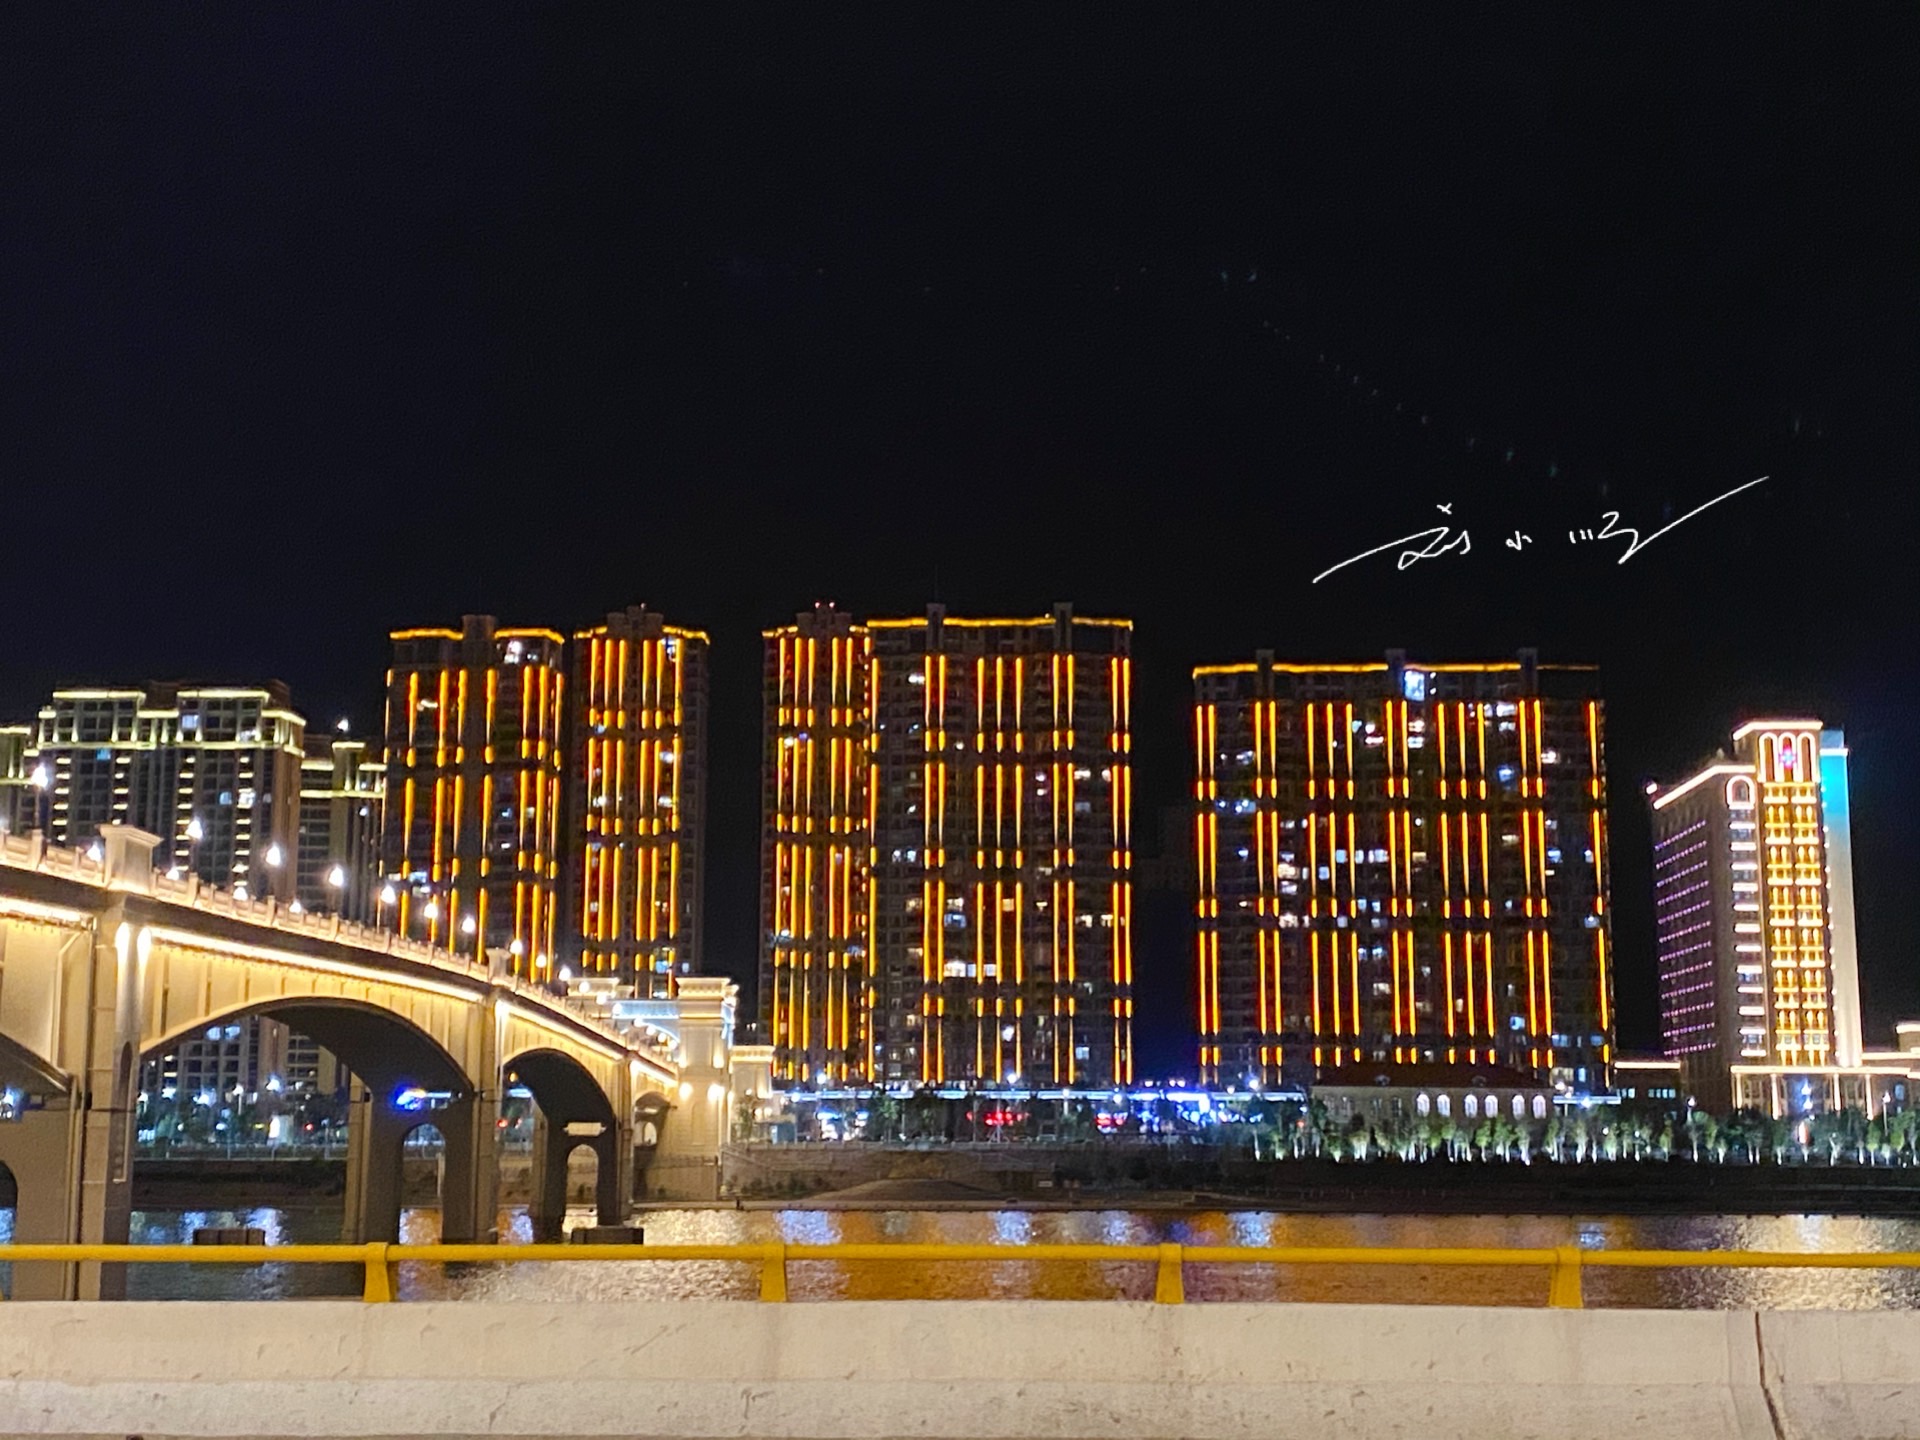 浙江省青田县最美网红人行桥,满满的欧洲风,却没人知道名字